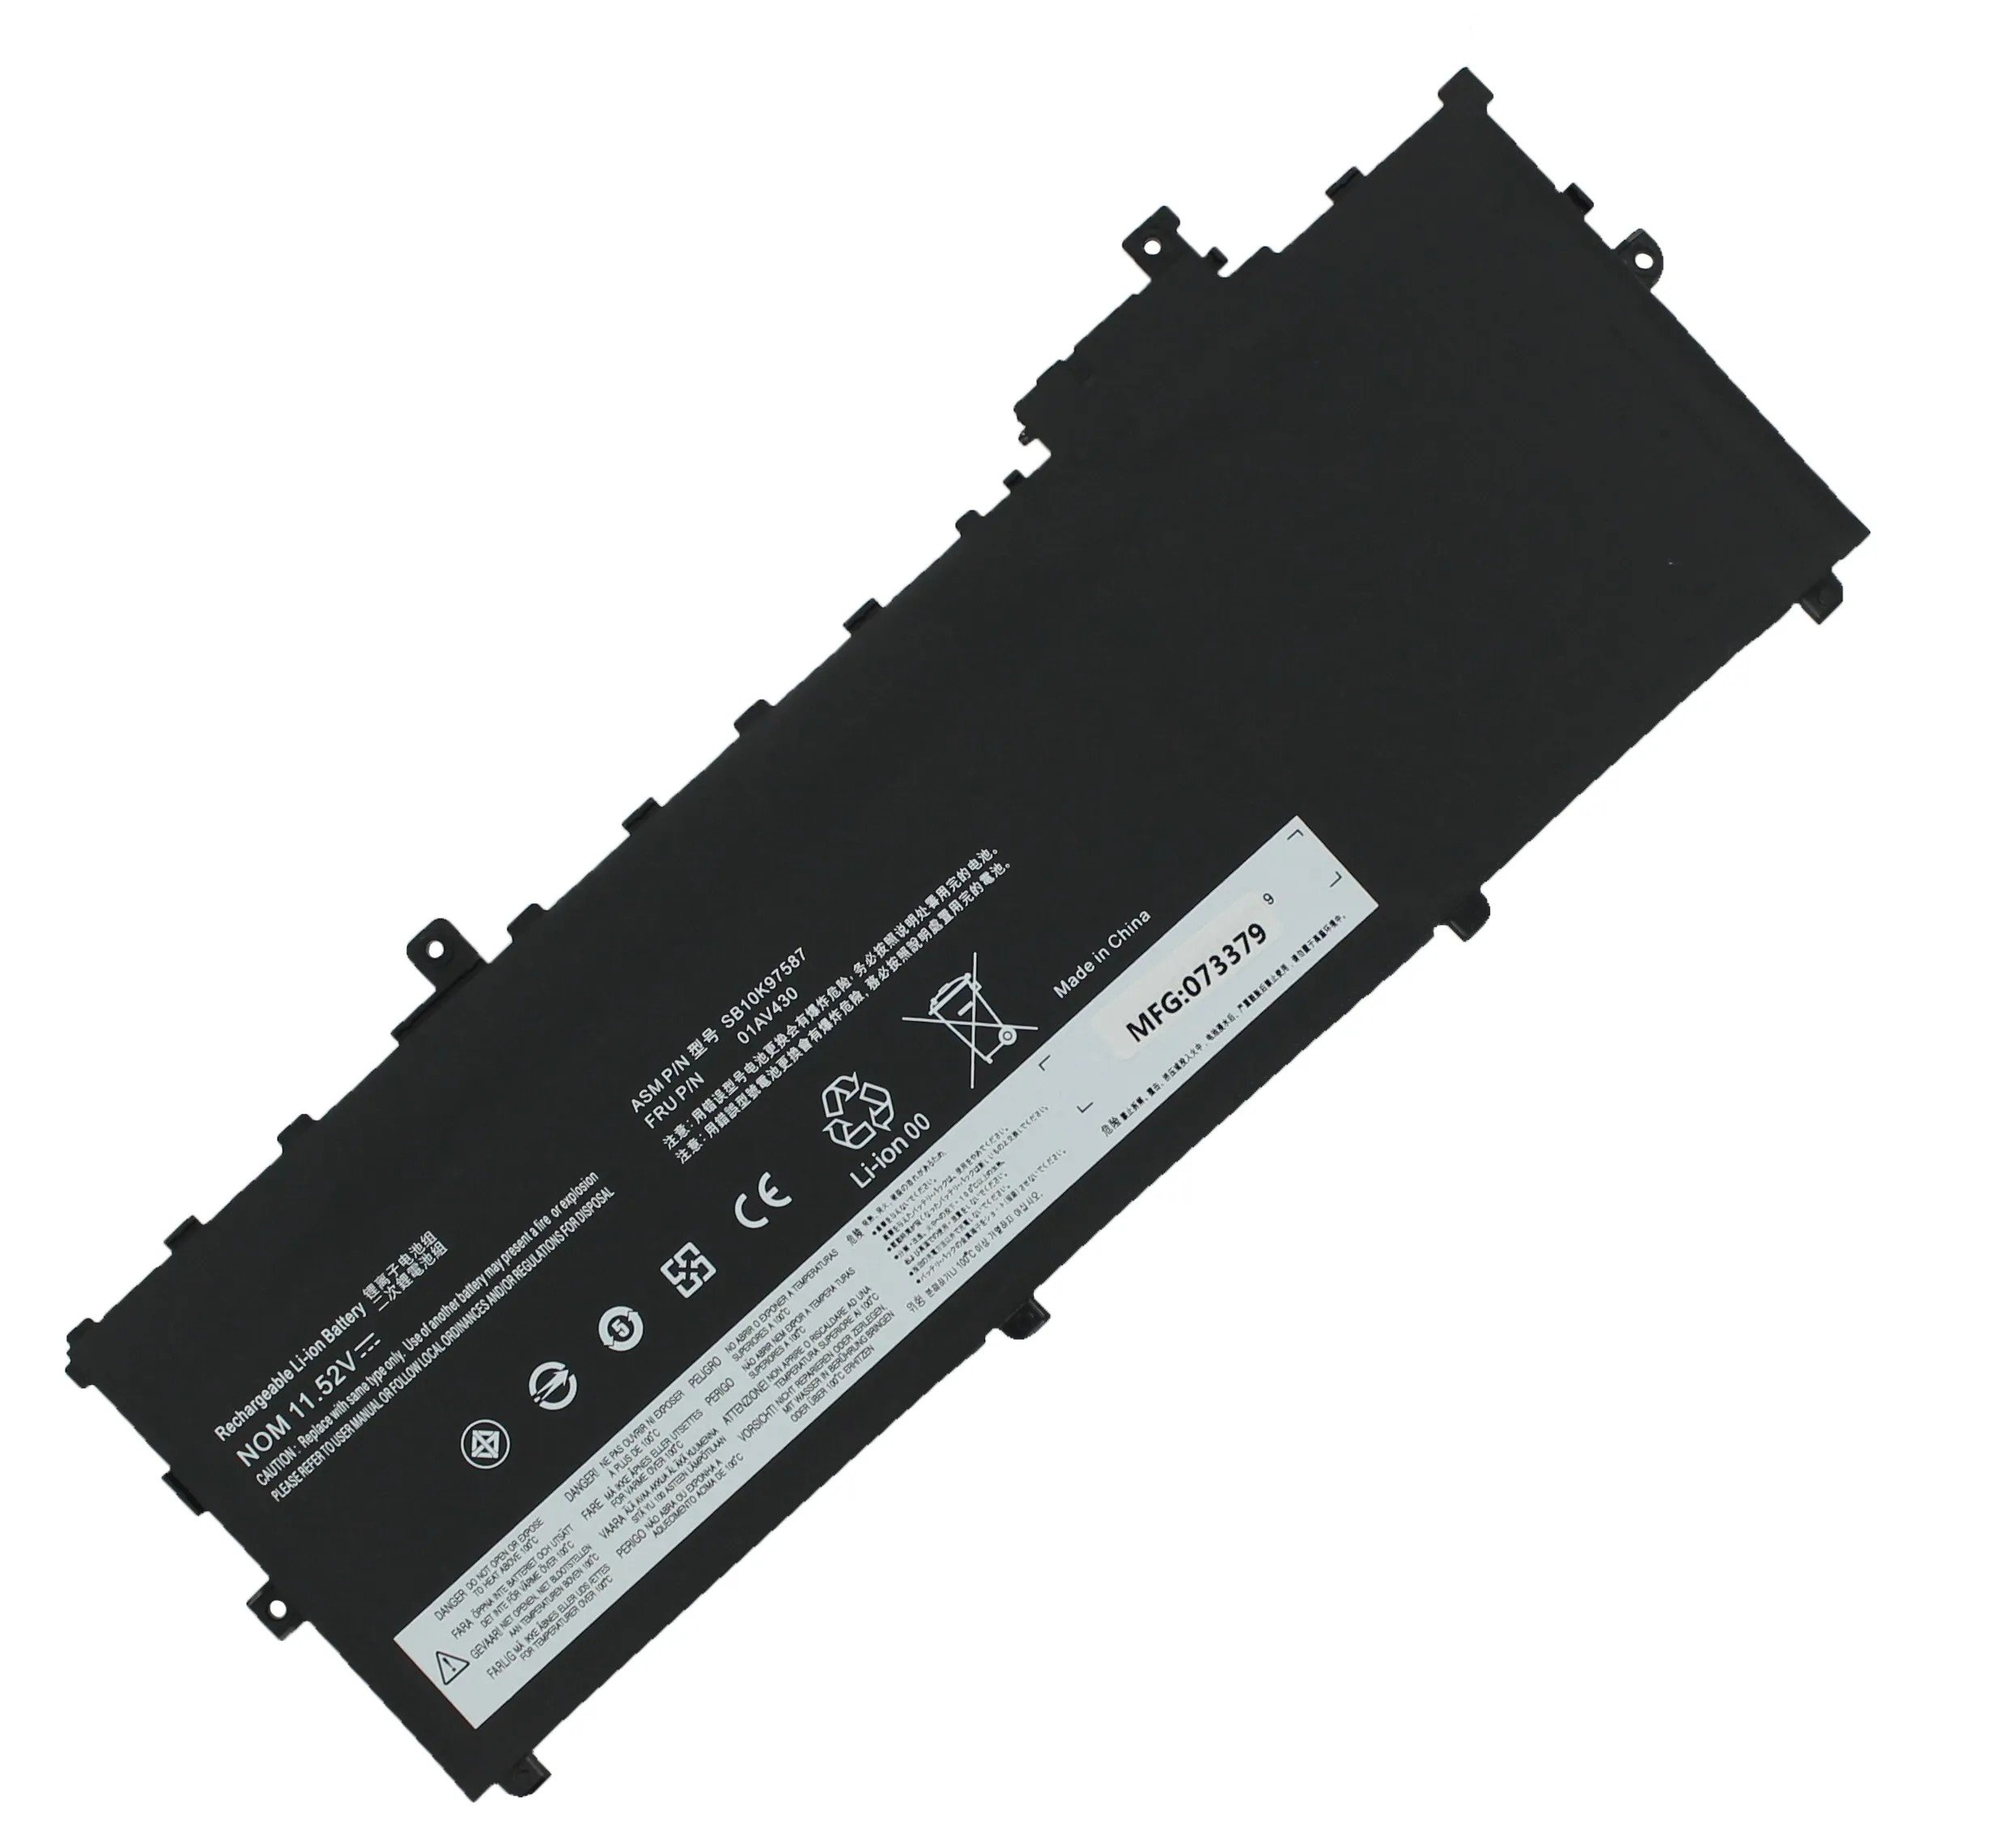 AGI Akku kompatibel mit Li-Pol ThinkPad 4800 Lenovo Notebookakku, X1-20K3S01120 11.58 mAh Volt, Li-Pol